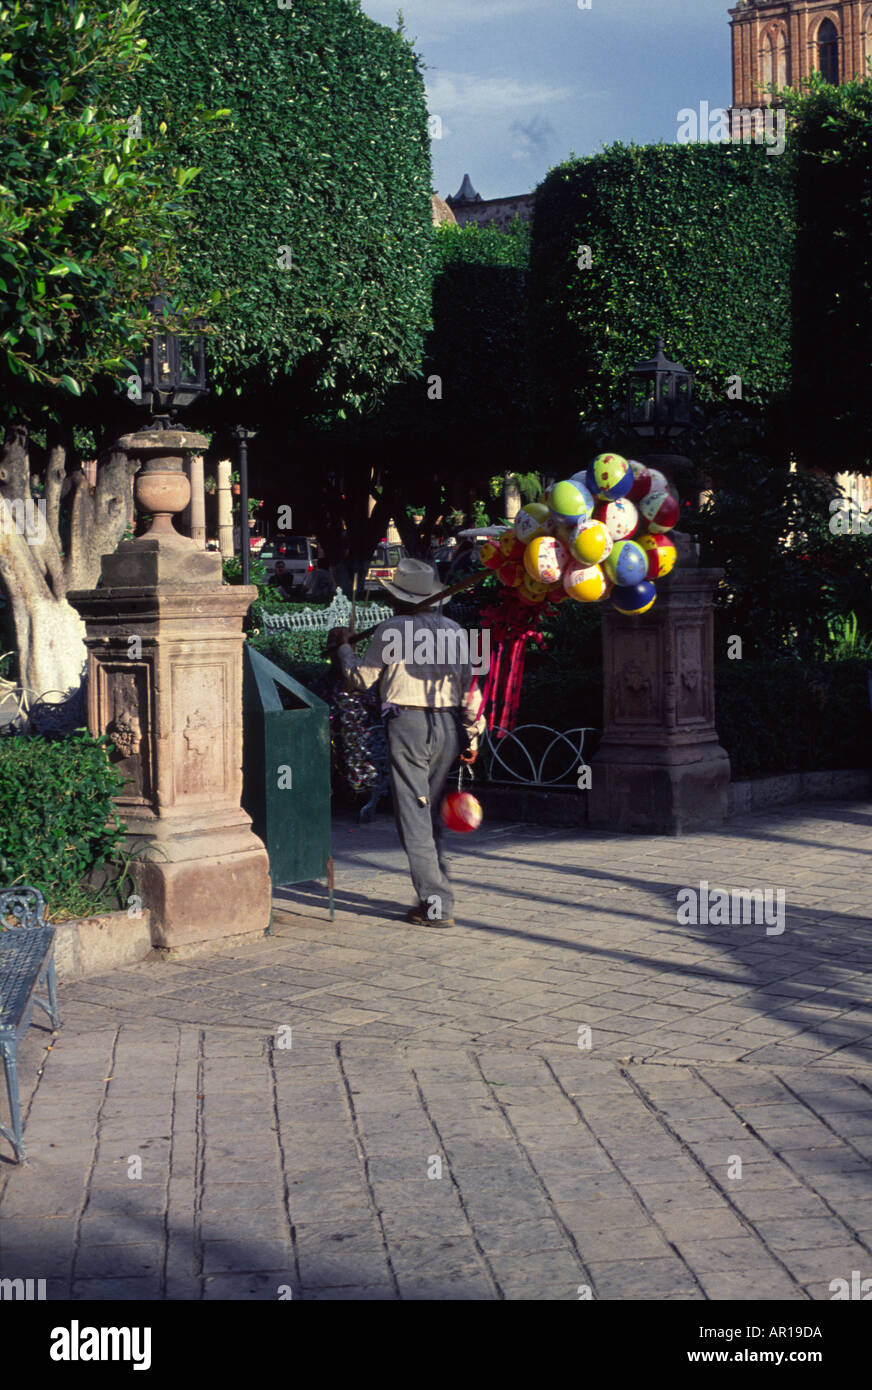 Balloon seller Le Jardin San Miguel de Allende Mexico Stock Photo